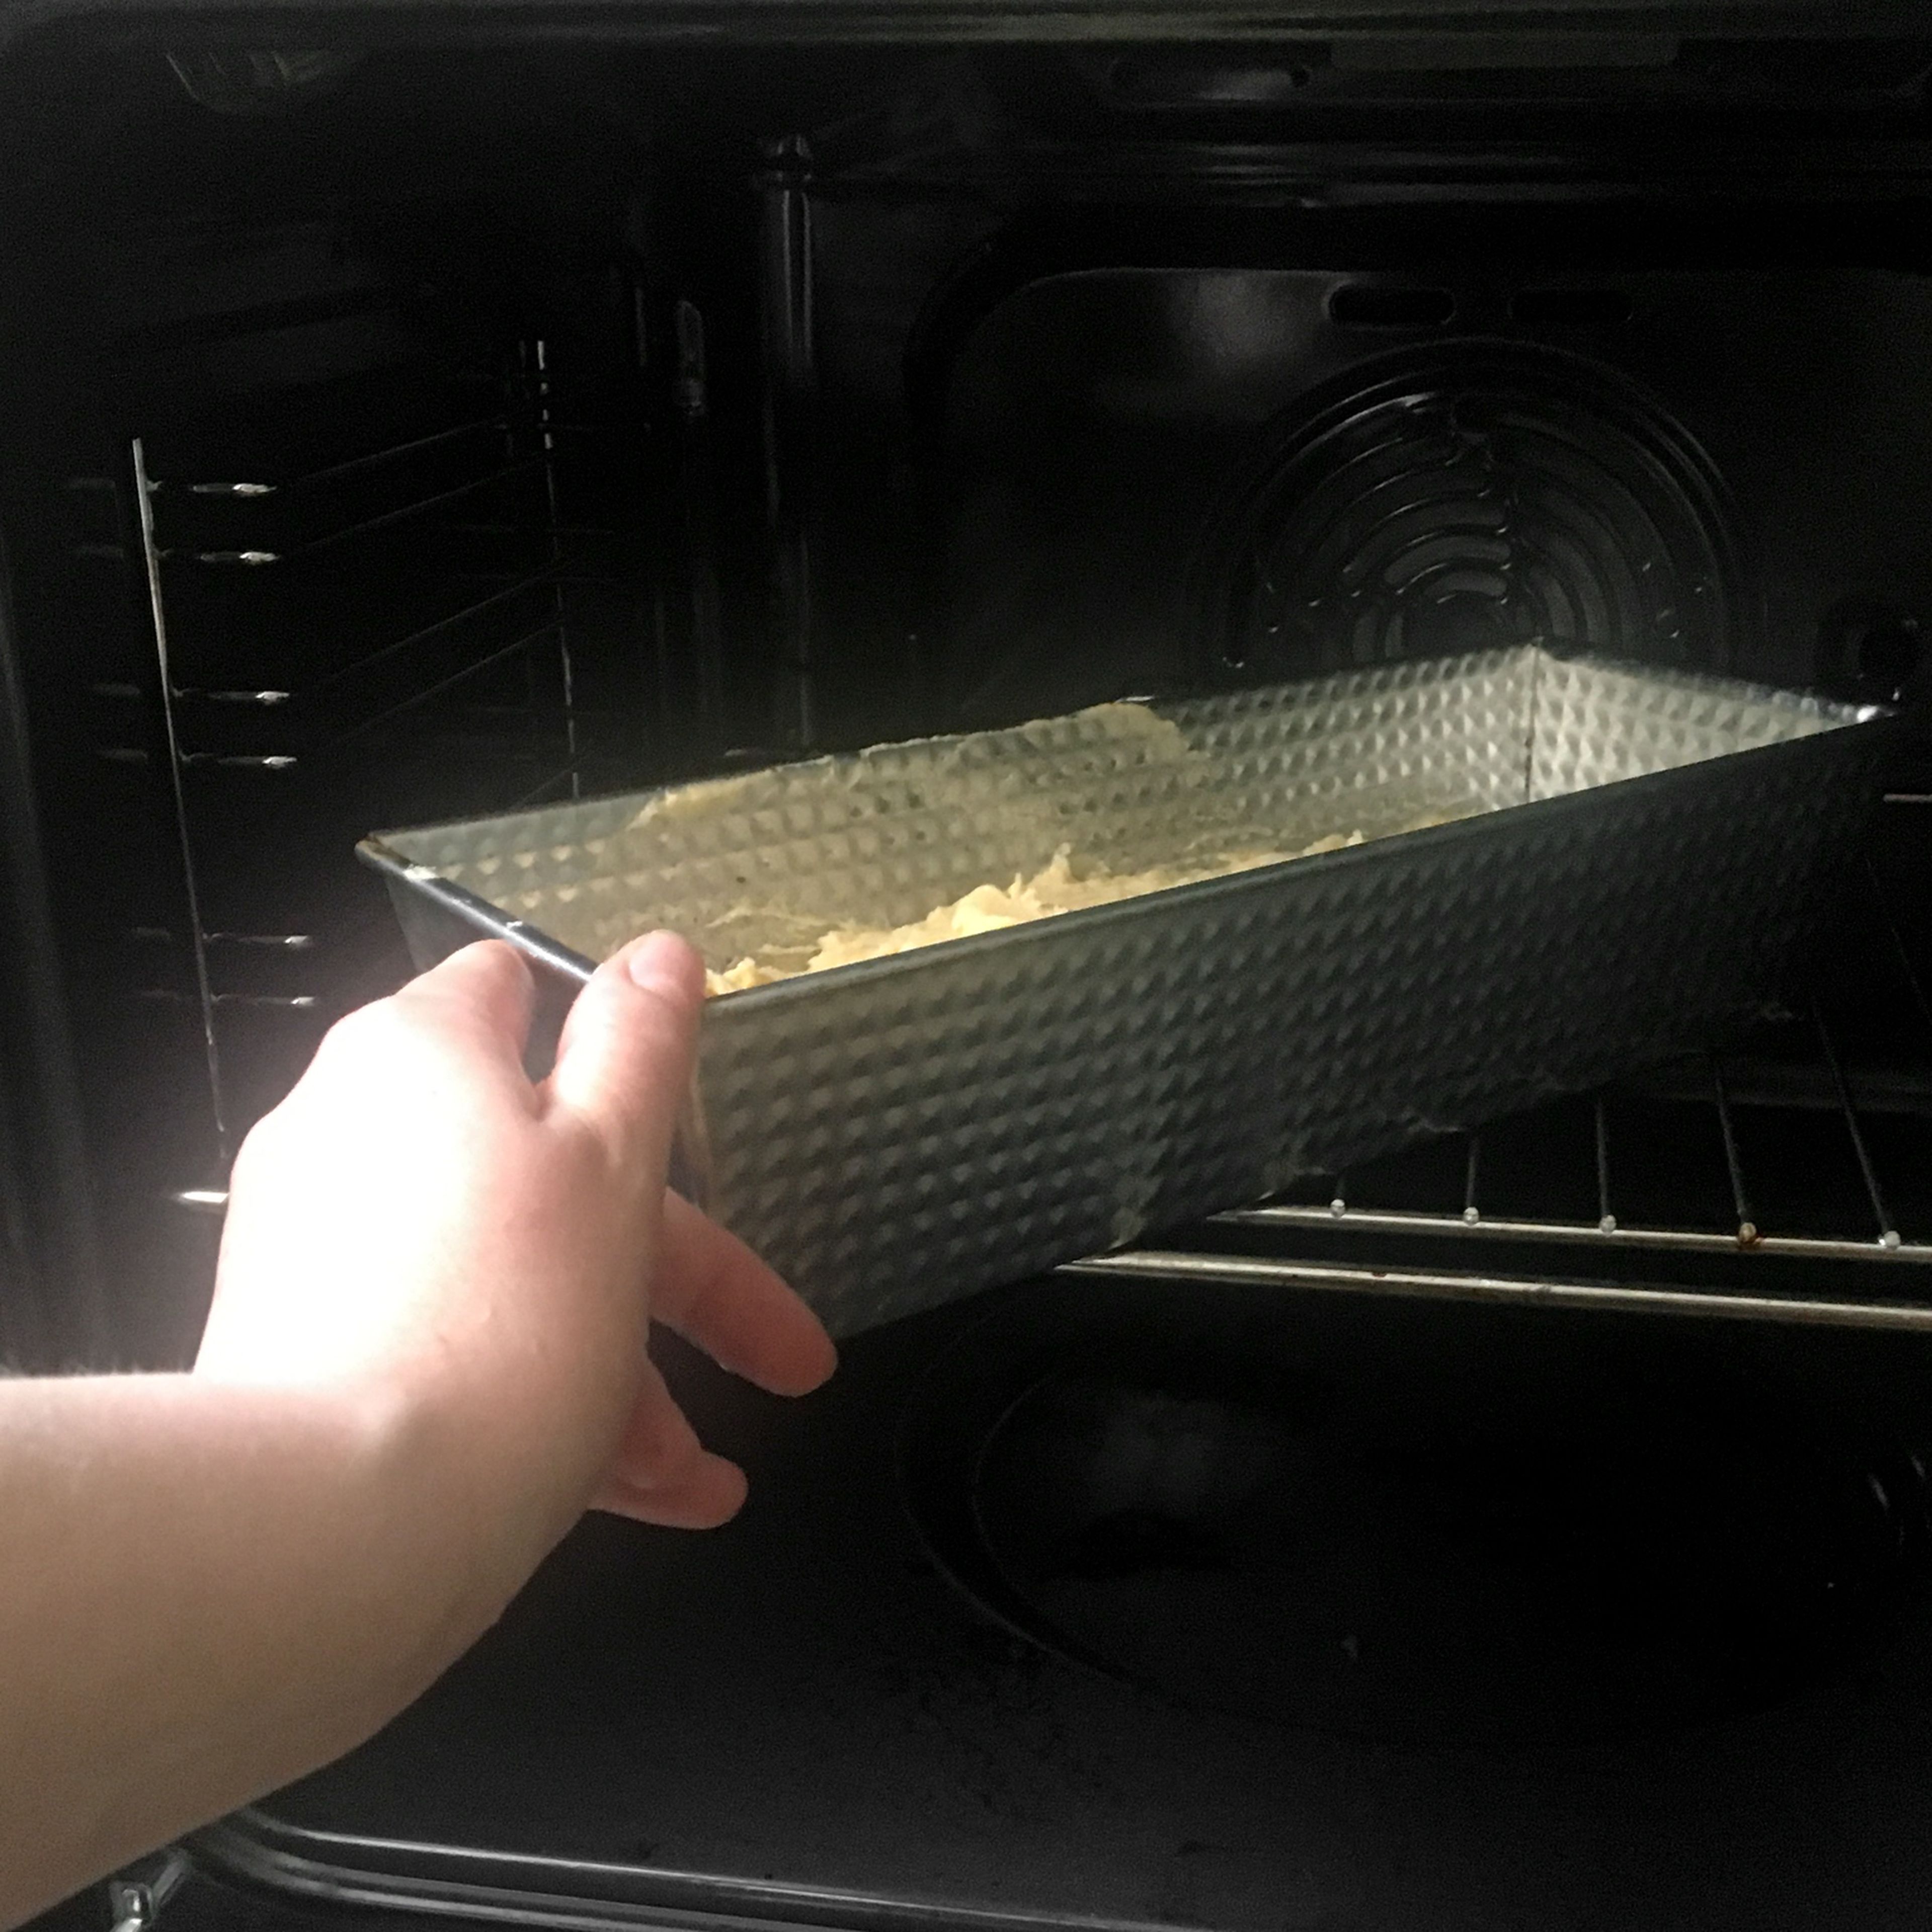 Den Teig in die Kuchenform füllen und für etwa 50 Min. backen, bis er goldbraun ist. Nach dem Backen kurz in der Form abkühlen lassen und den Rührkuchen dann auf ein Kuchengitter stürzen.